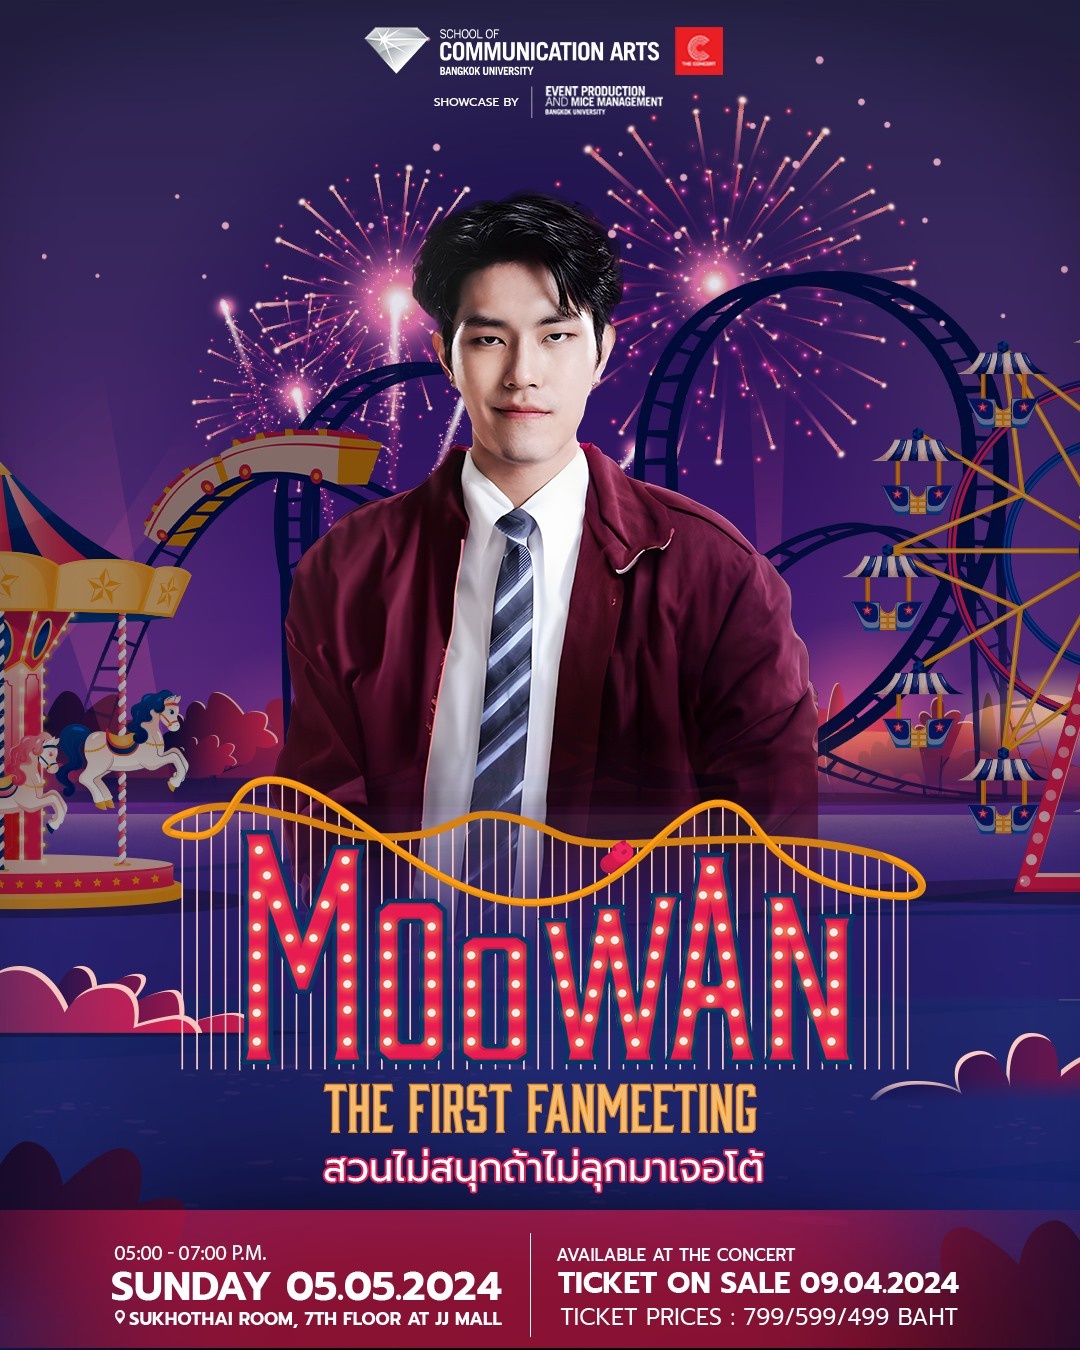 เชิญพบกับ Fanmeeting ครั้งแรก! ของ หมูหวาน-เมธาสิทธิ์ ใน MOOWAN THE FIRST FAN MEETING Showcase by EVENT BU